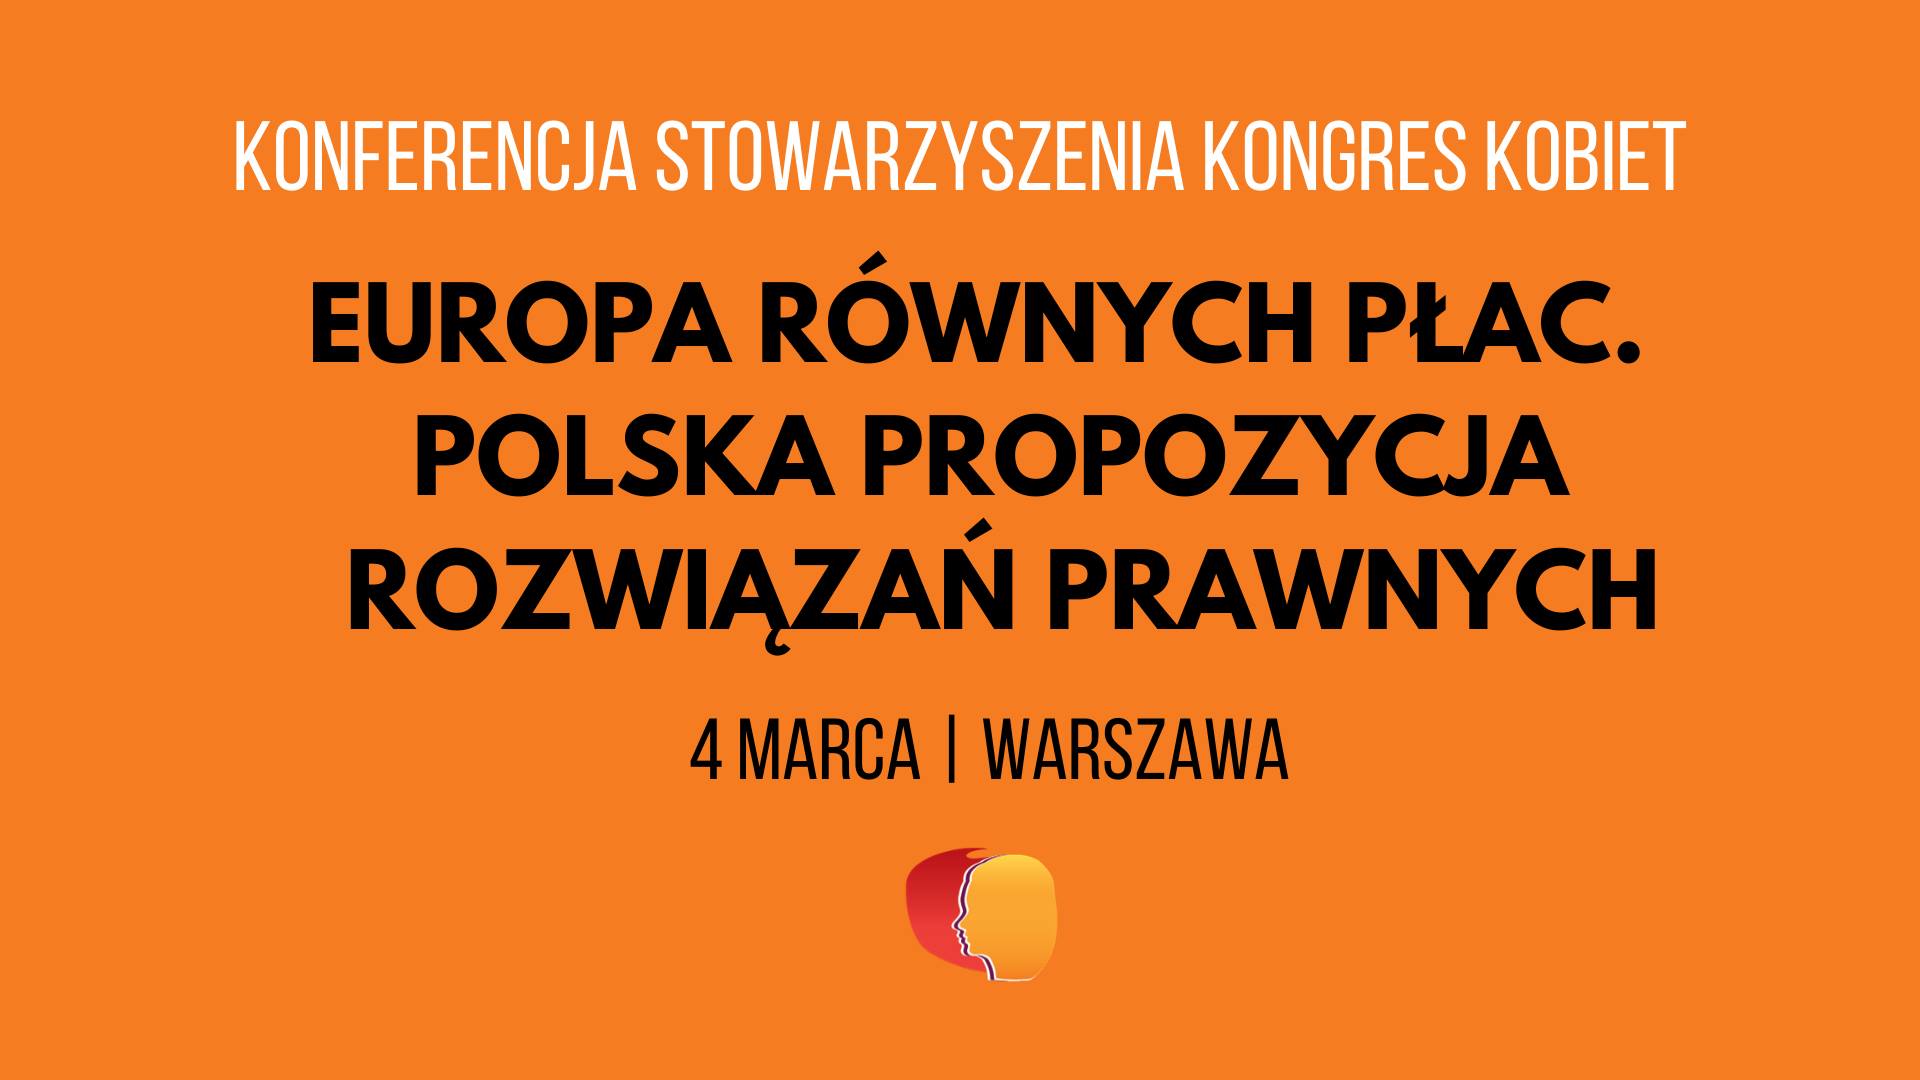 Europa równych płac. Polska propozycja rozwiązań prawnych.